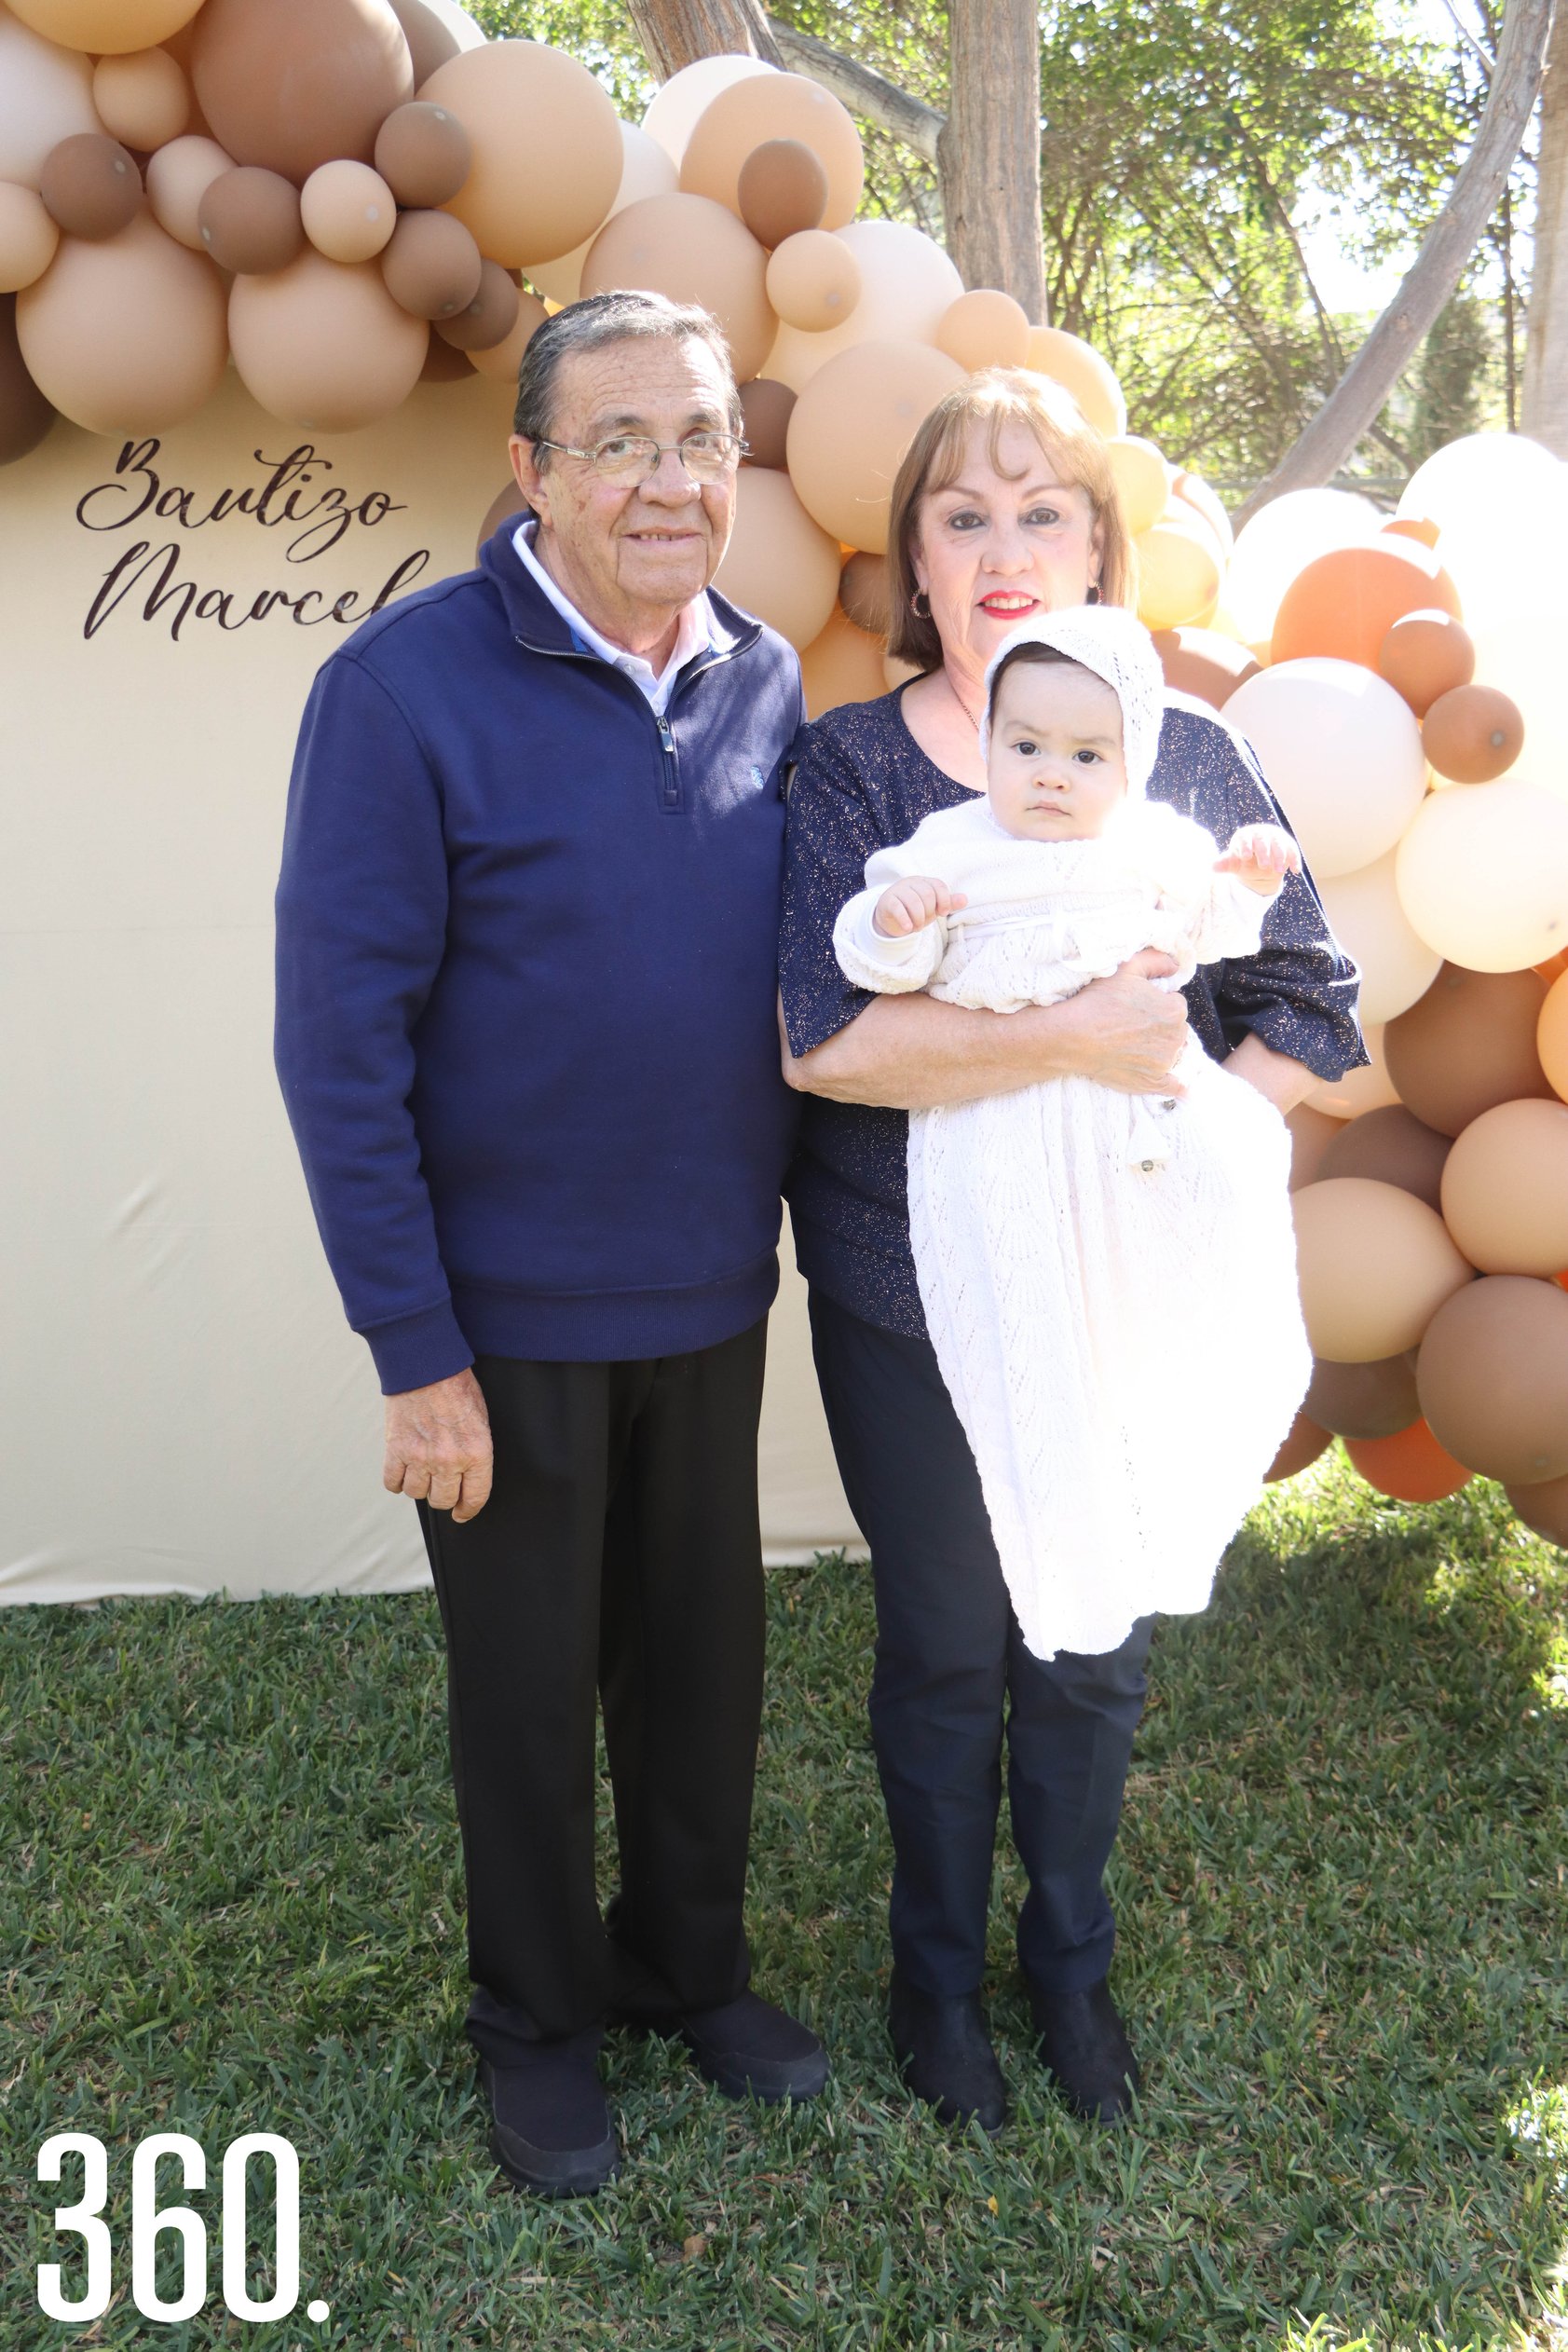 Marcelo con sus abuelos maternos, Leopoldo Morales y Luly Moeller.